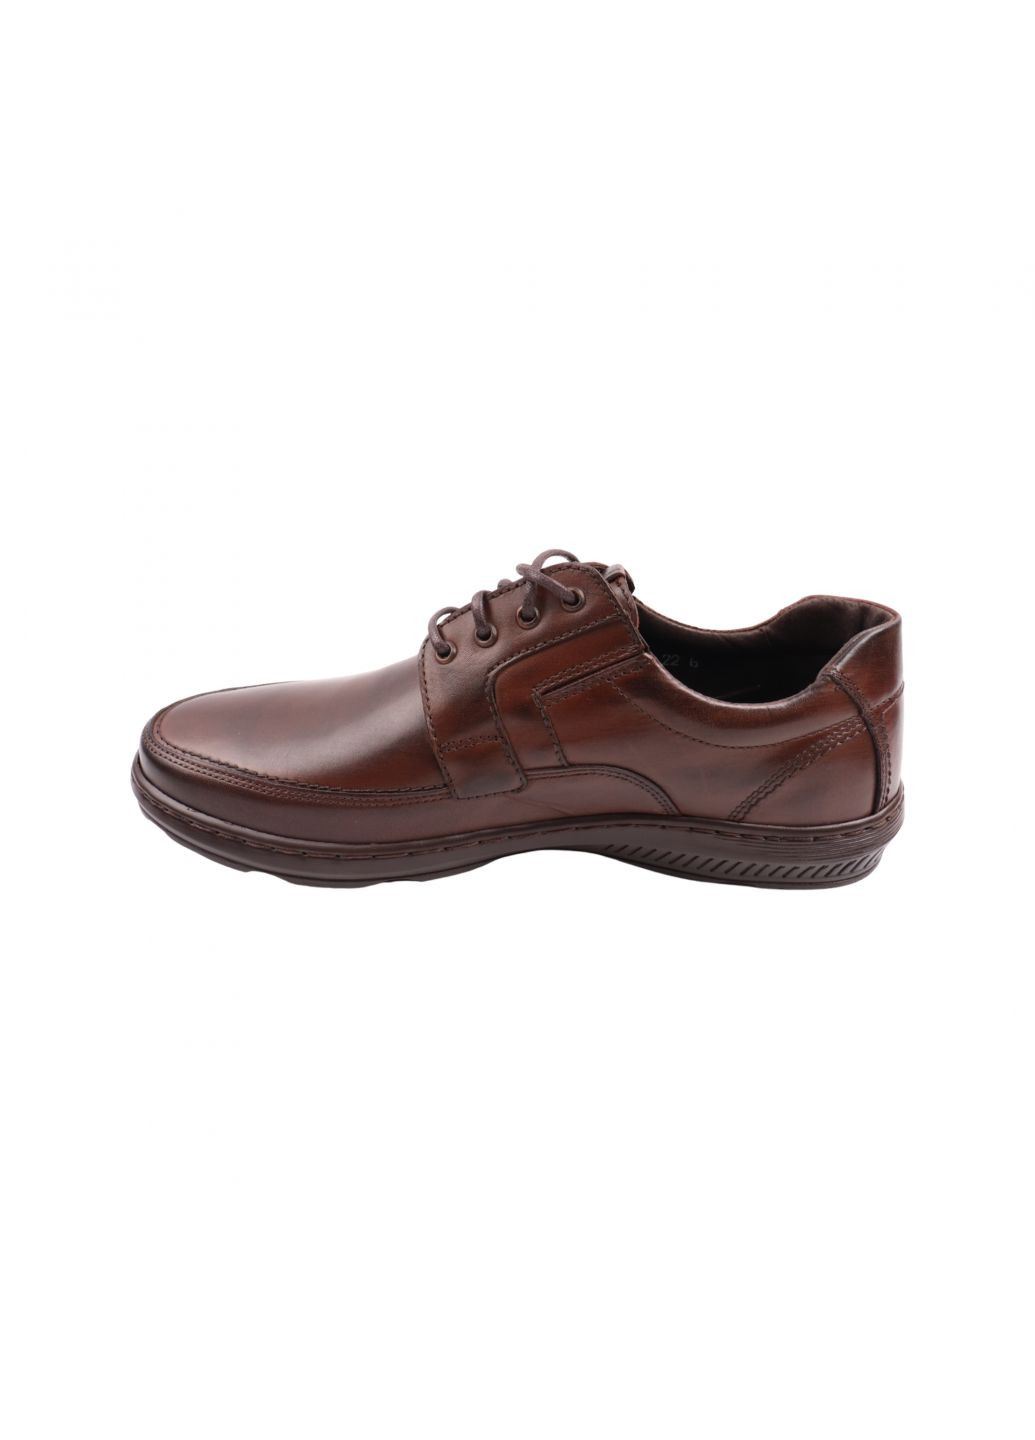 Туфлі чоловічі коричневі натуральна шкіра Giorgio 42-23dtc (257454405)